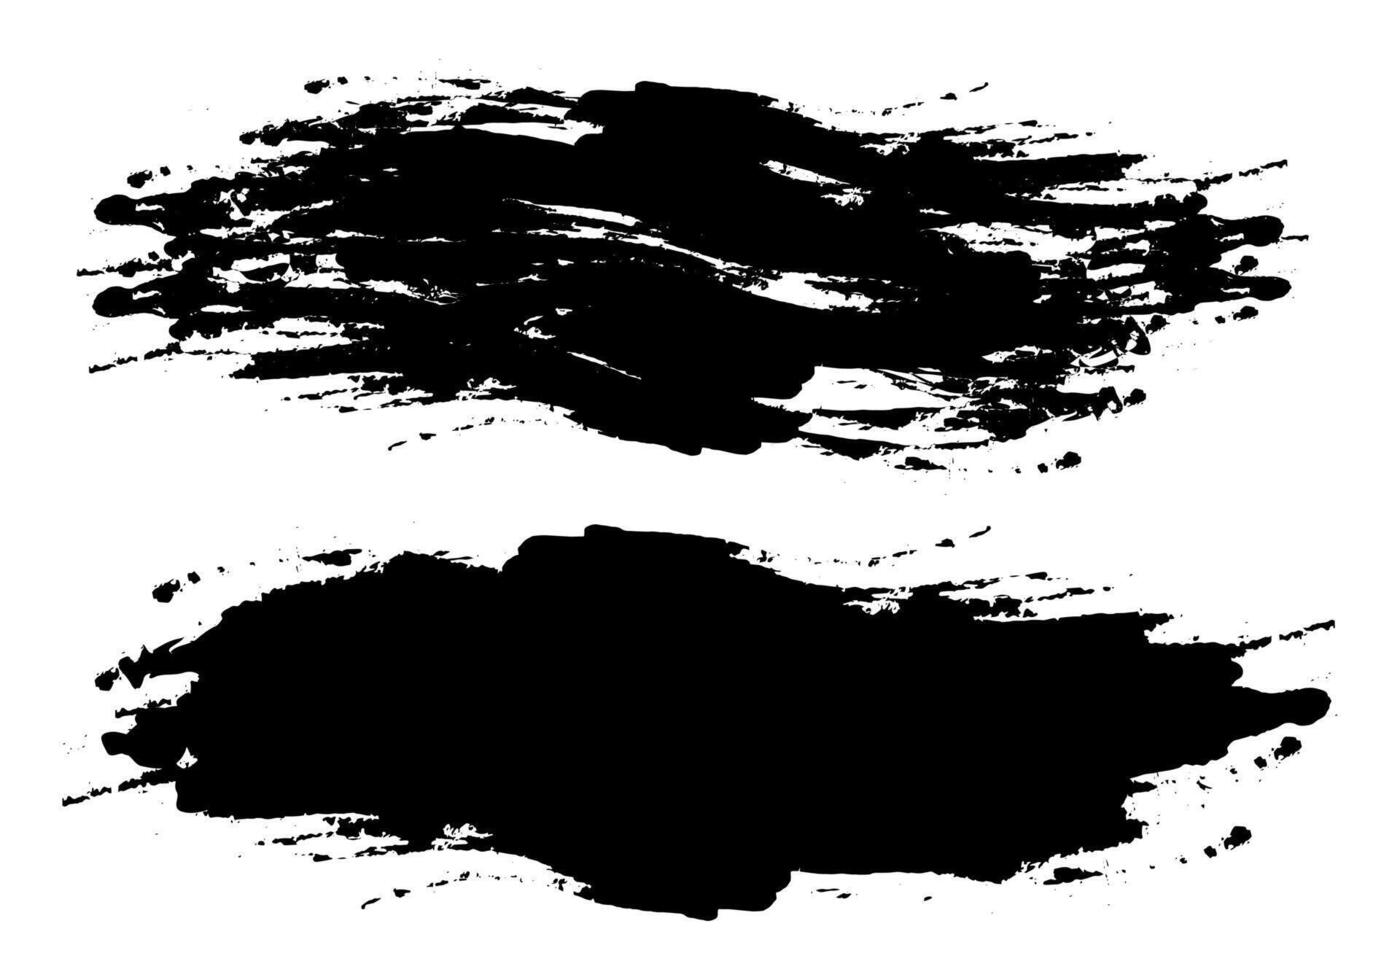 svart bläck fläckar på vit bakgrund vektor, svart bläck stänka ner på vit bakgrund, grunge borsta stroke vektor illustration, en svart och vit teckning av en måla stänka ner